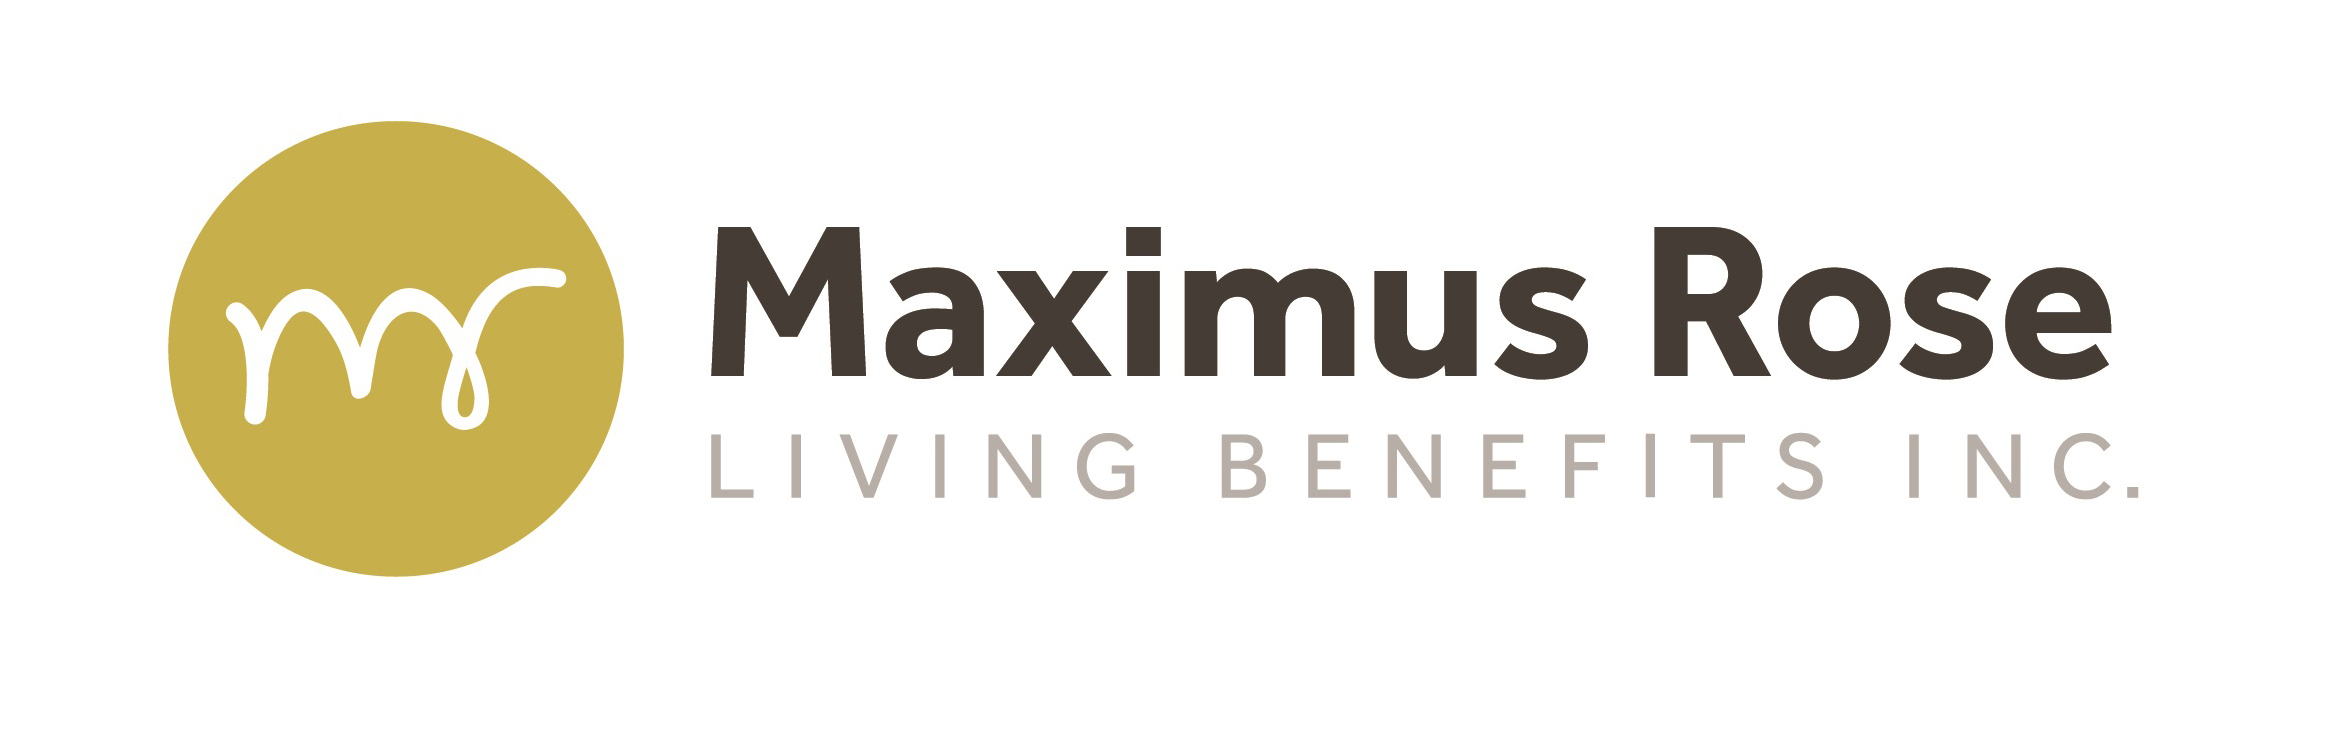 Maximus Rose Living Benefits Inc.